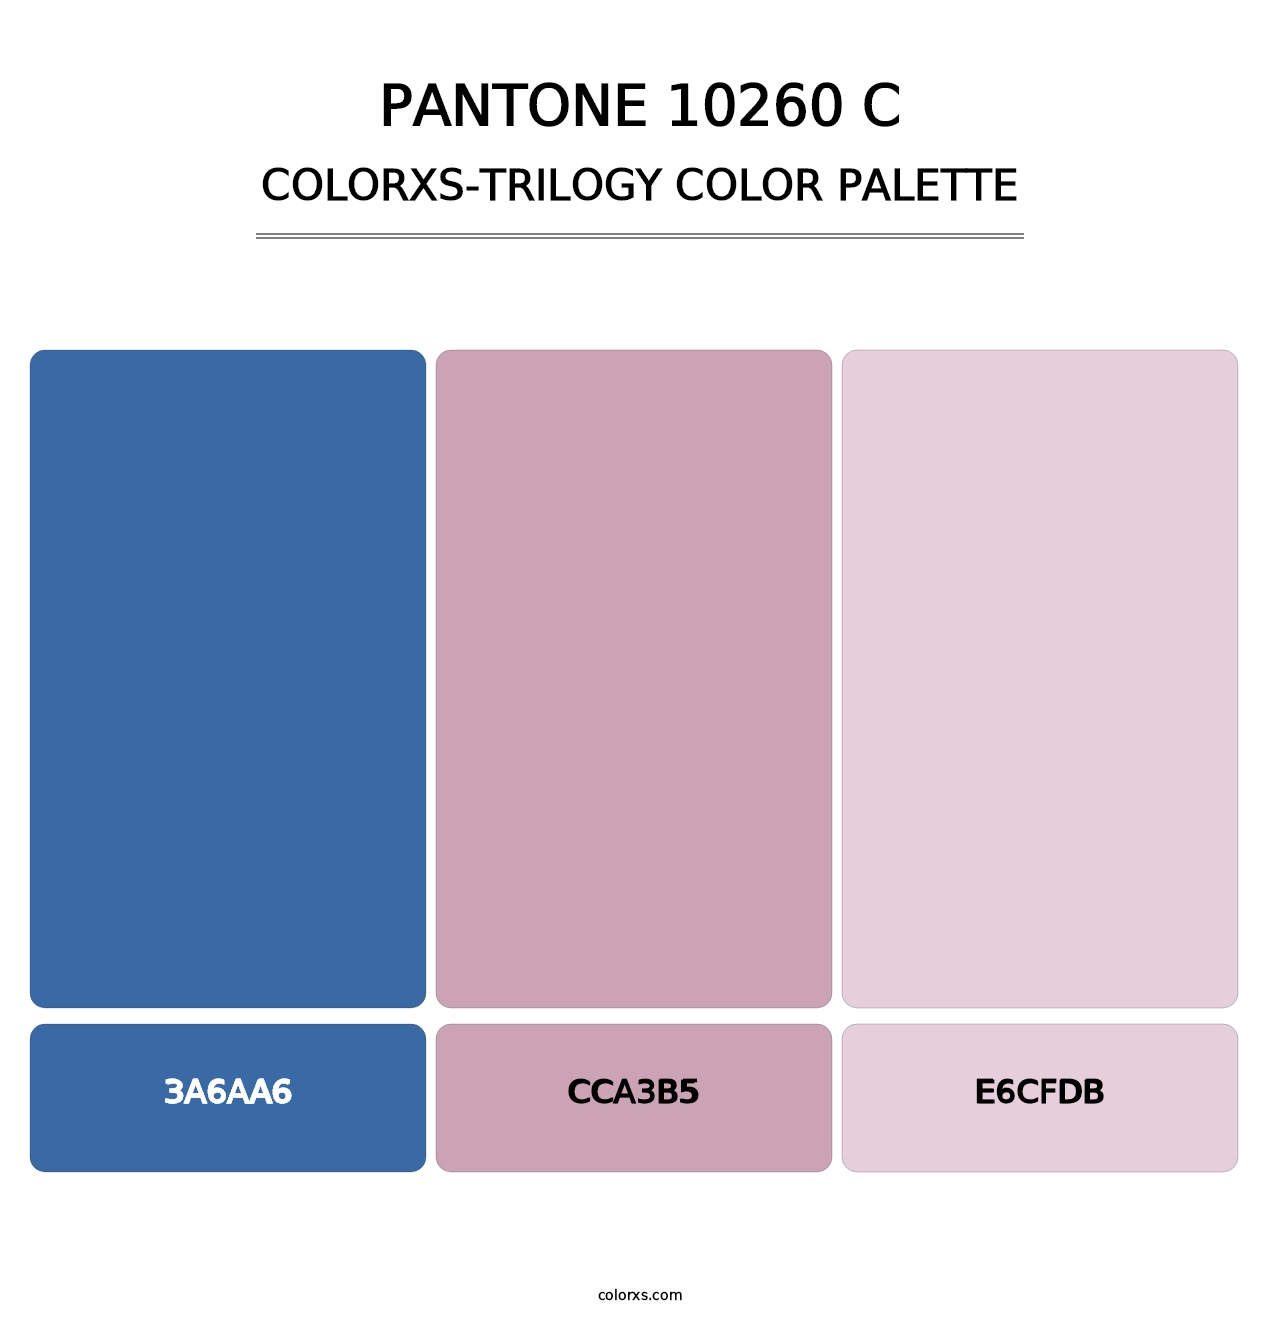 PANTONE 10260 C - Colorxs Trilogy Palette